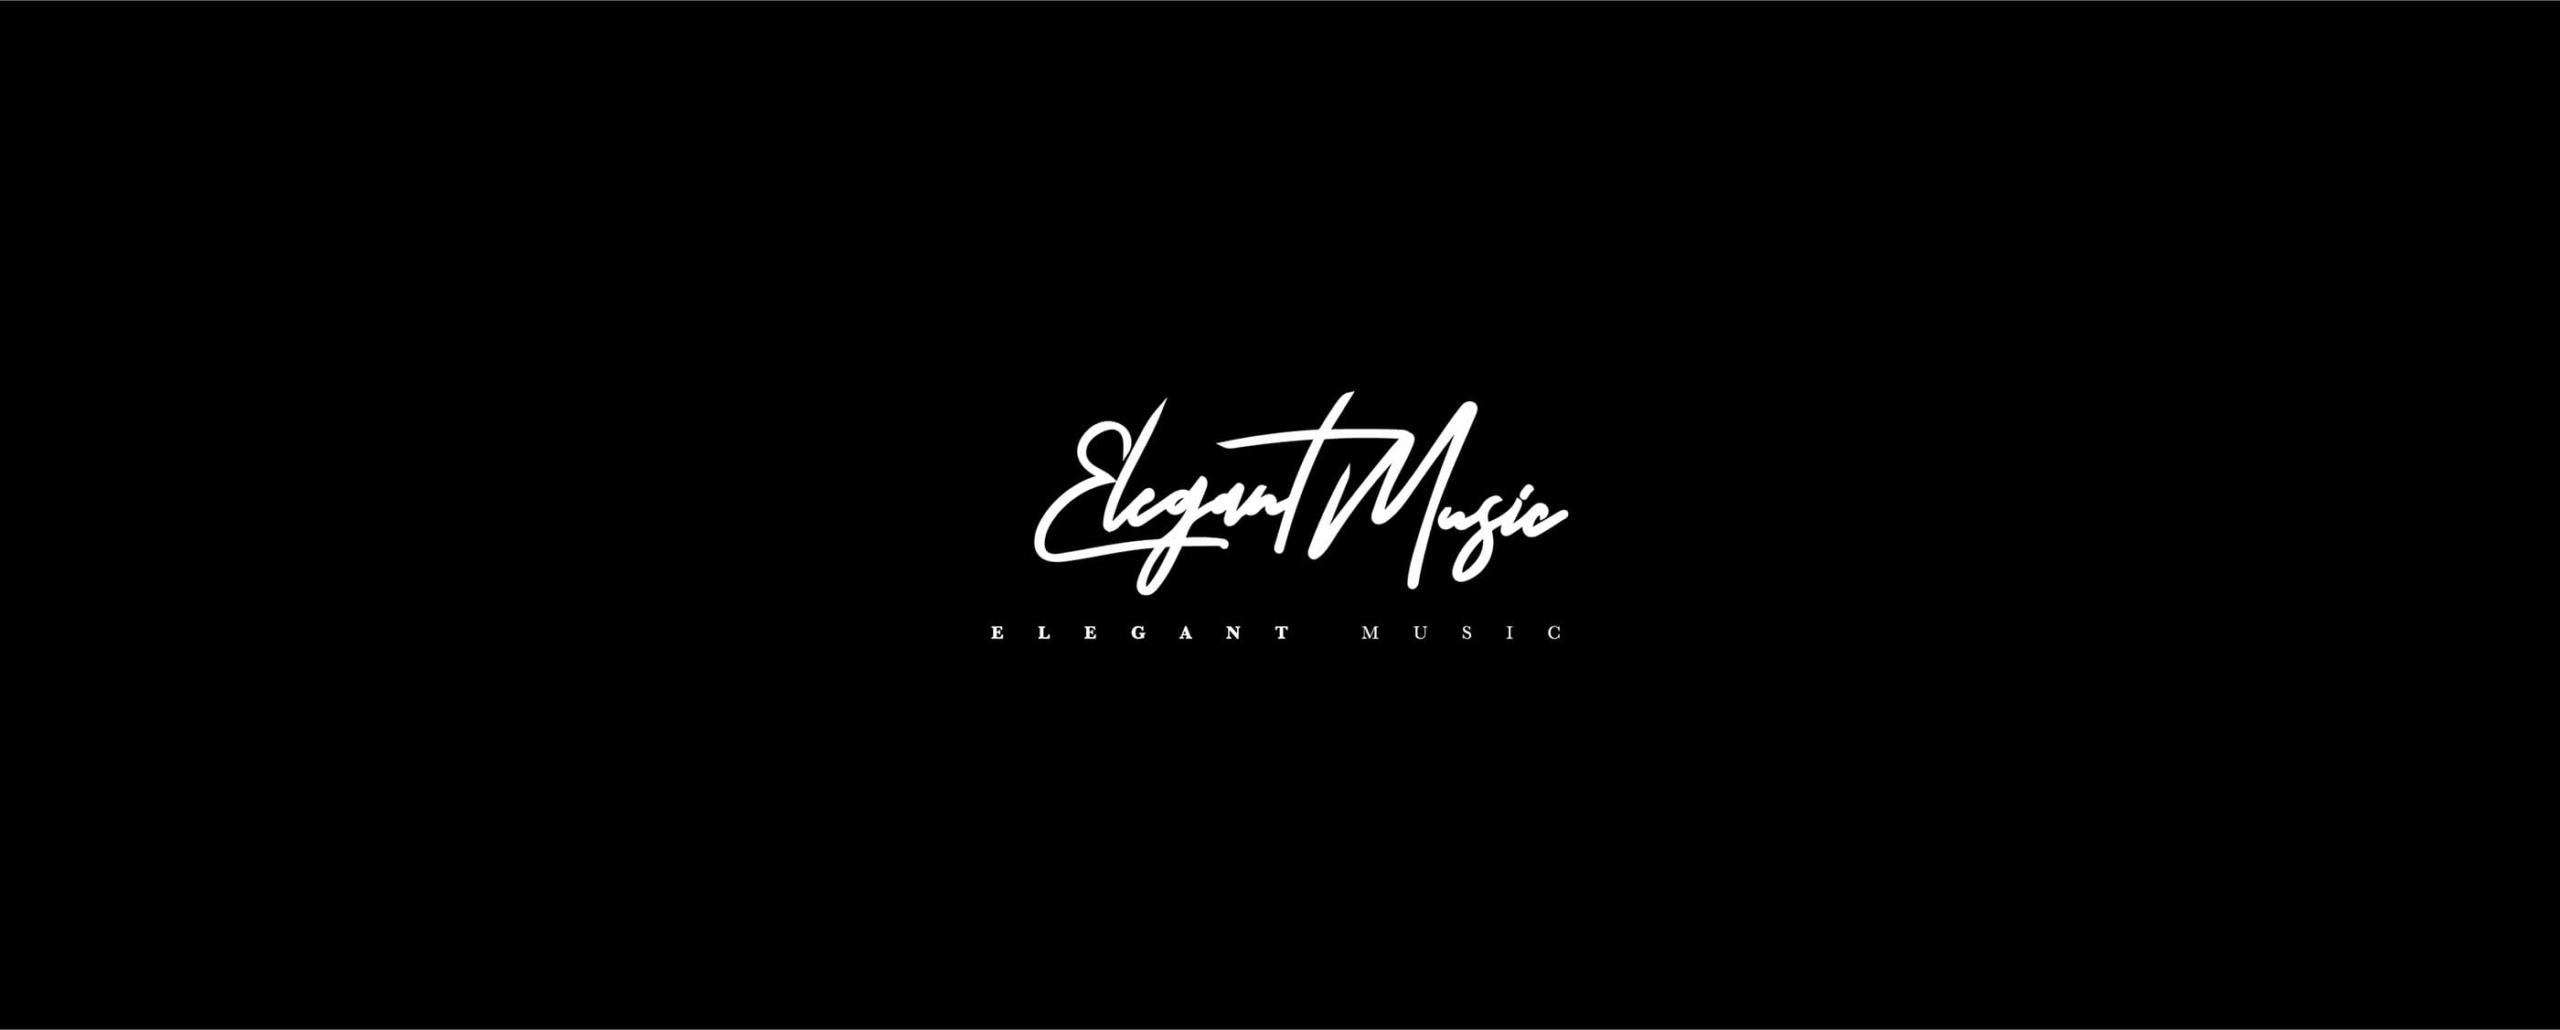 Elegant Music logo concept